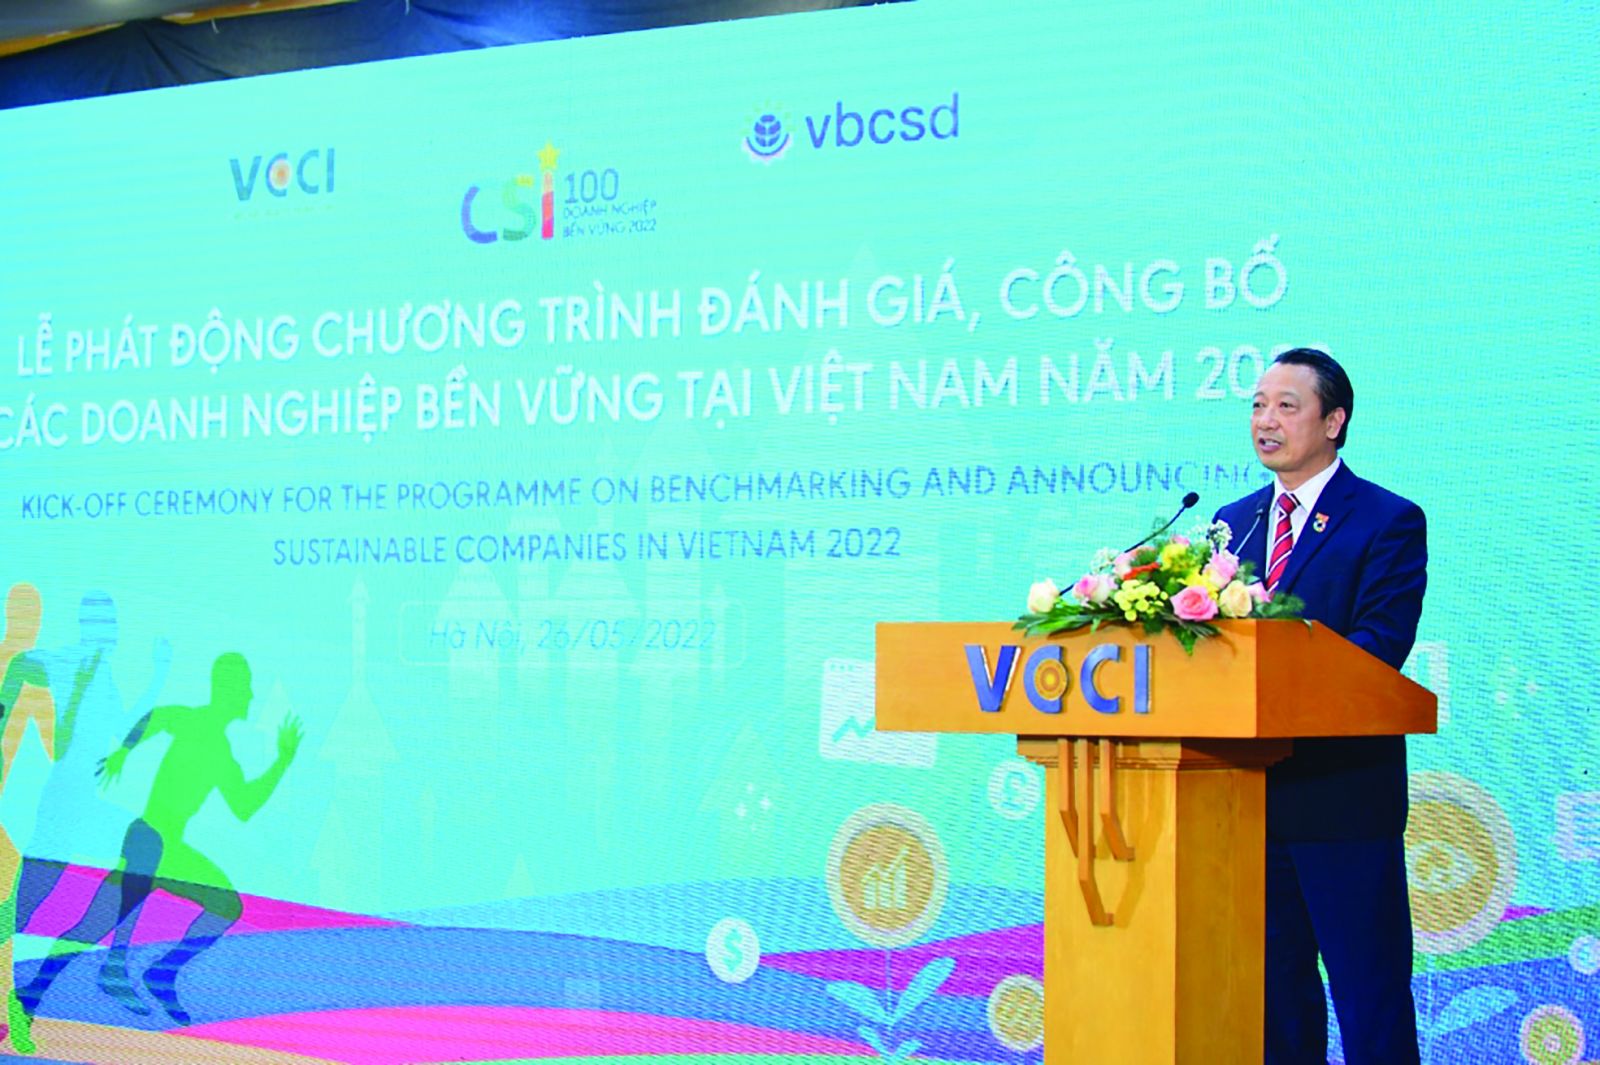  Ông Nguyễn Quang Vinh, Phó Chủ tịch chuyên trách VCCI, Chủ tịch VBCSD phát biểu khai mạc tại Lễ phát động Chương trình Đánh giá, Công bố Doanh nghiệp bền vững tại Việt Nam năm 2022 (CSI 2022)